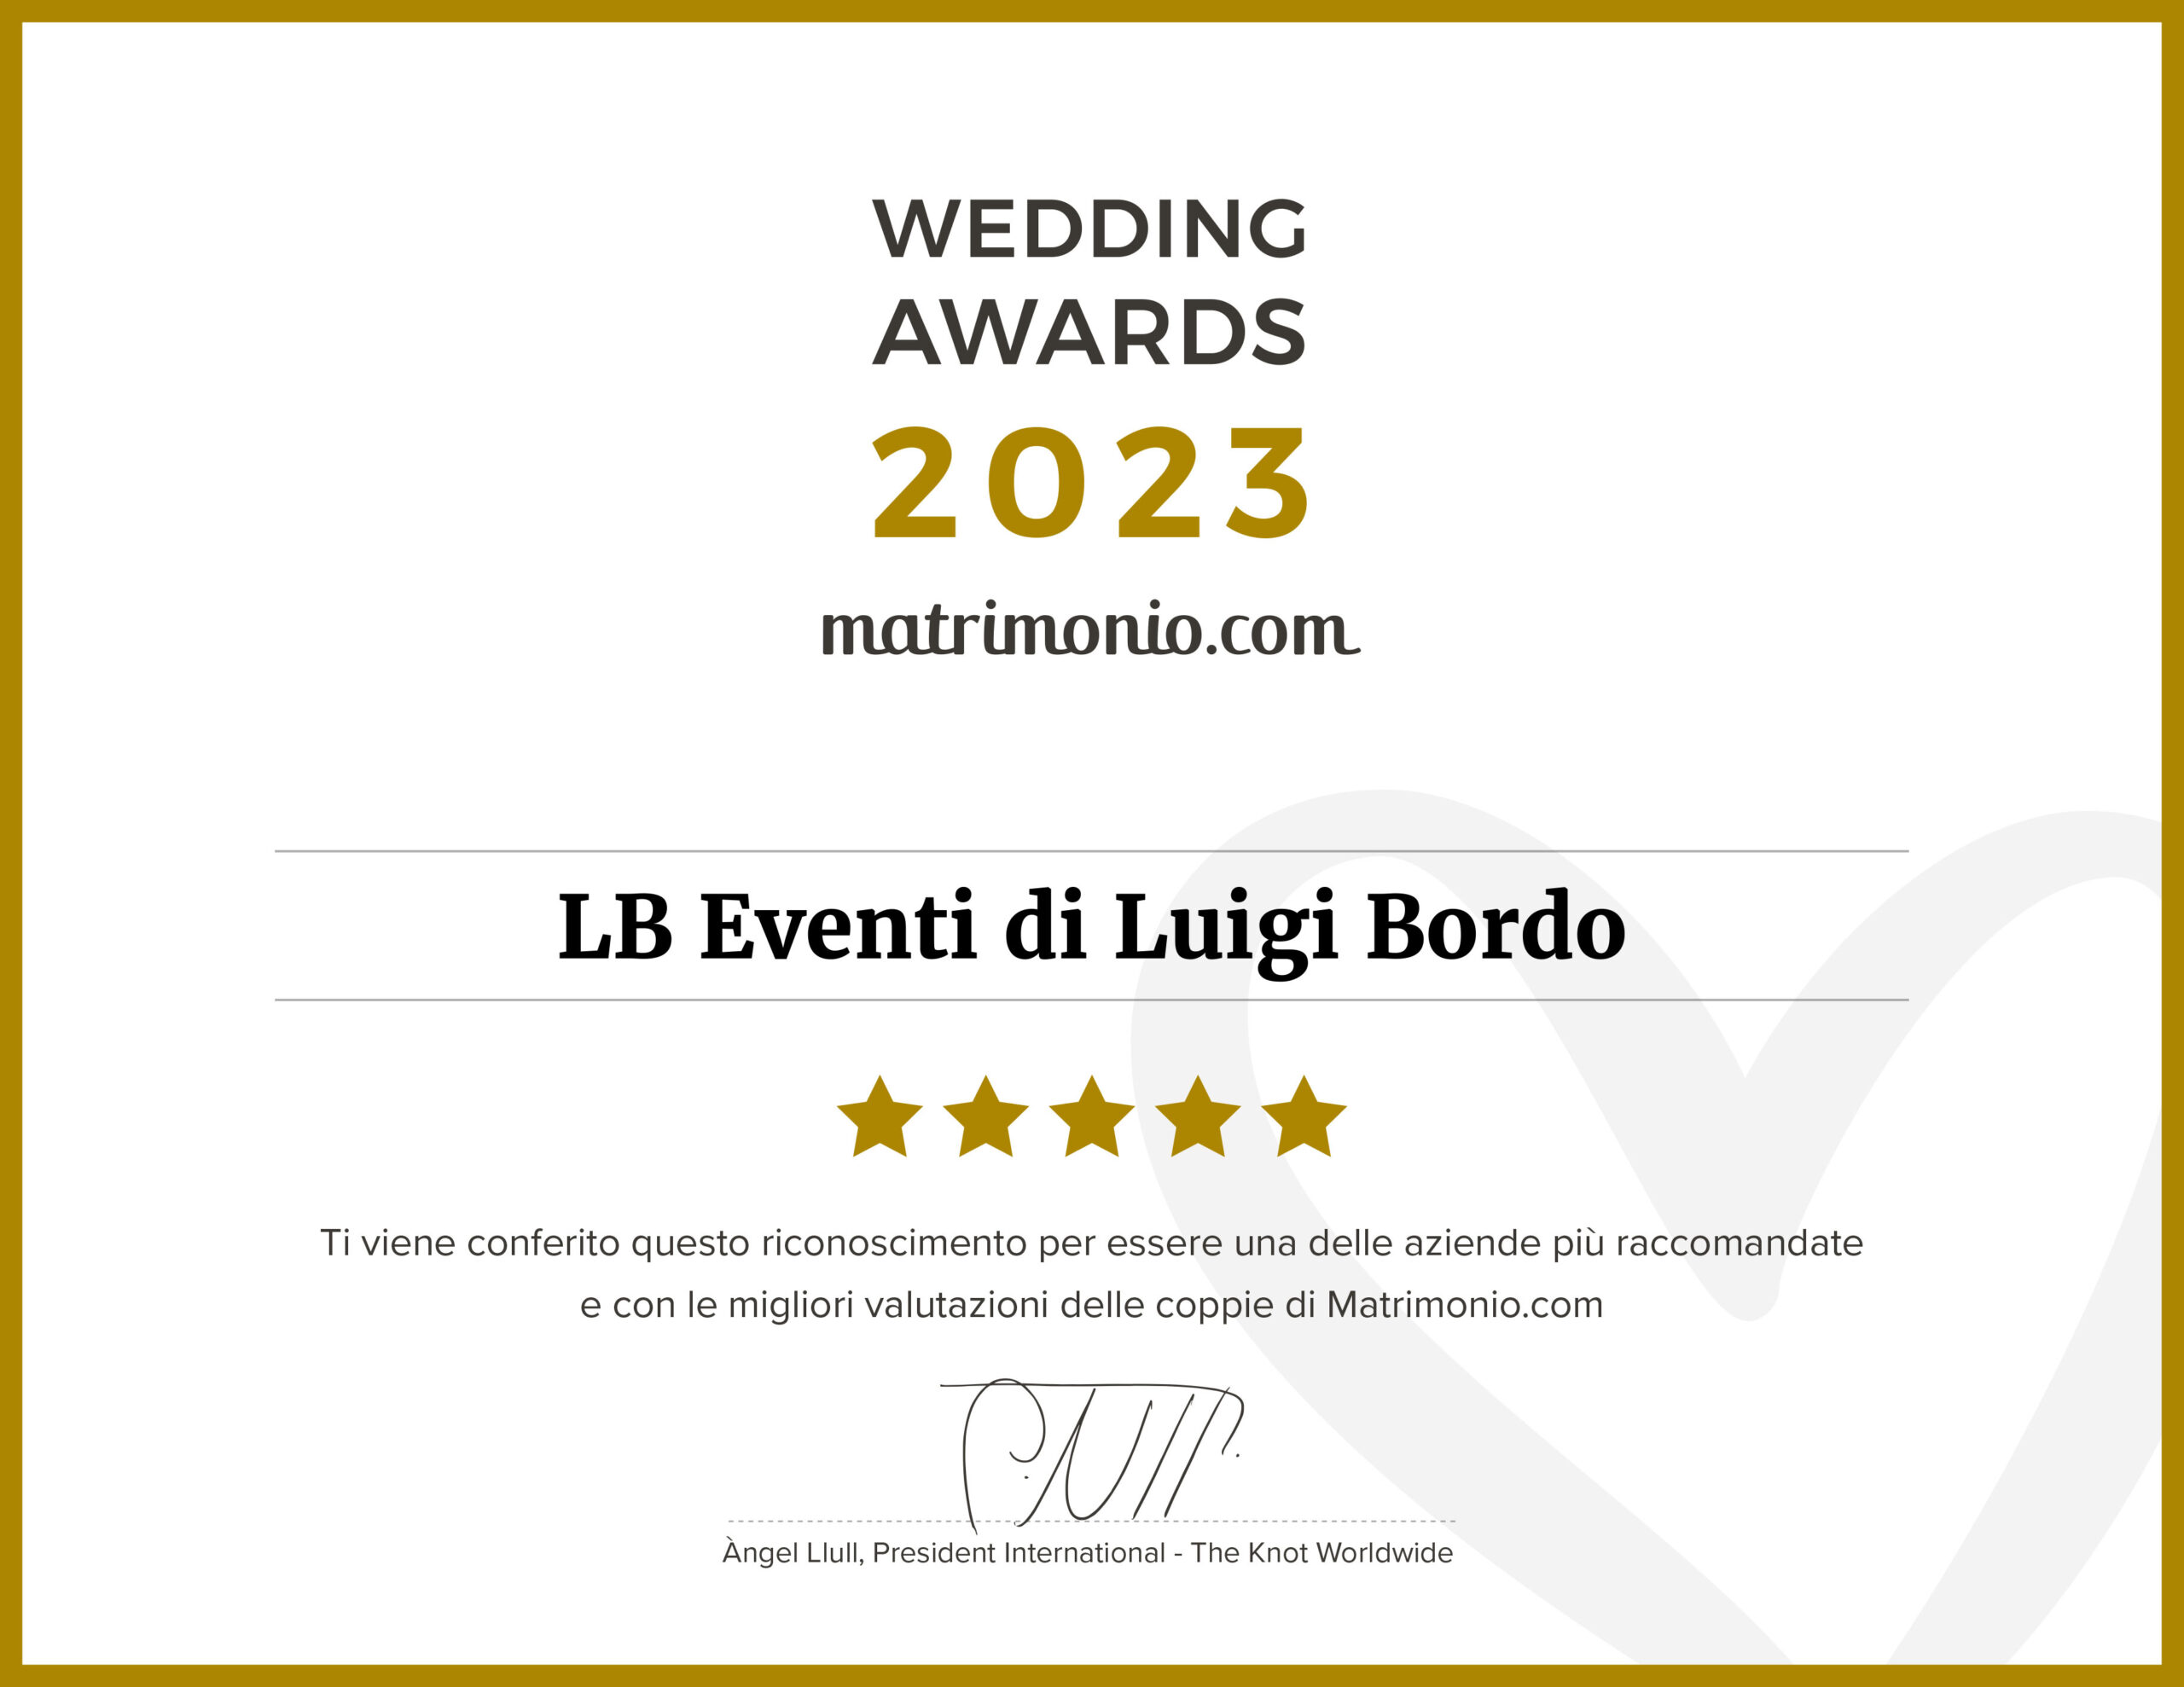 vincitore del wedding award 2023 - il wedding planner con le migliori recensioni a Roma e Viterbo